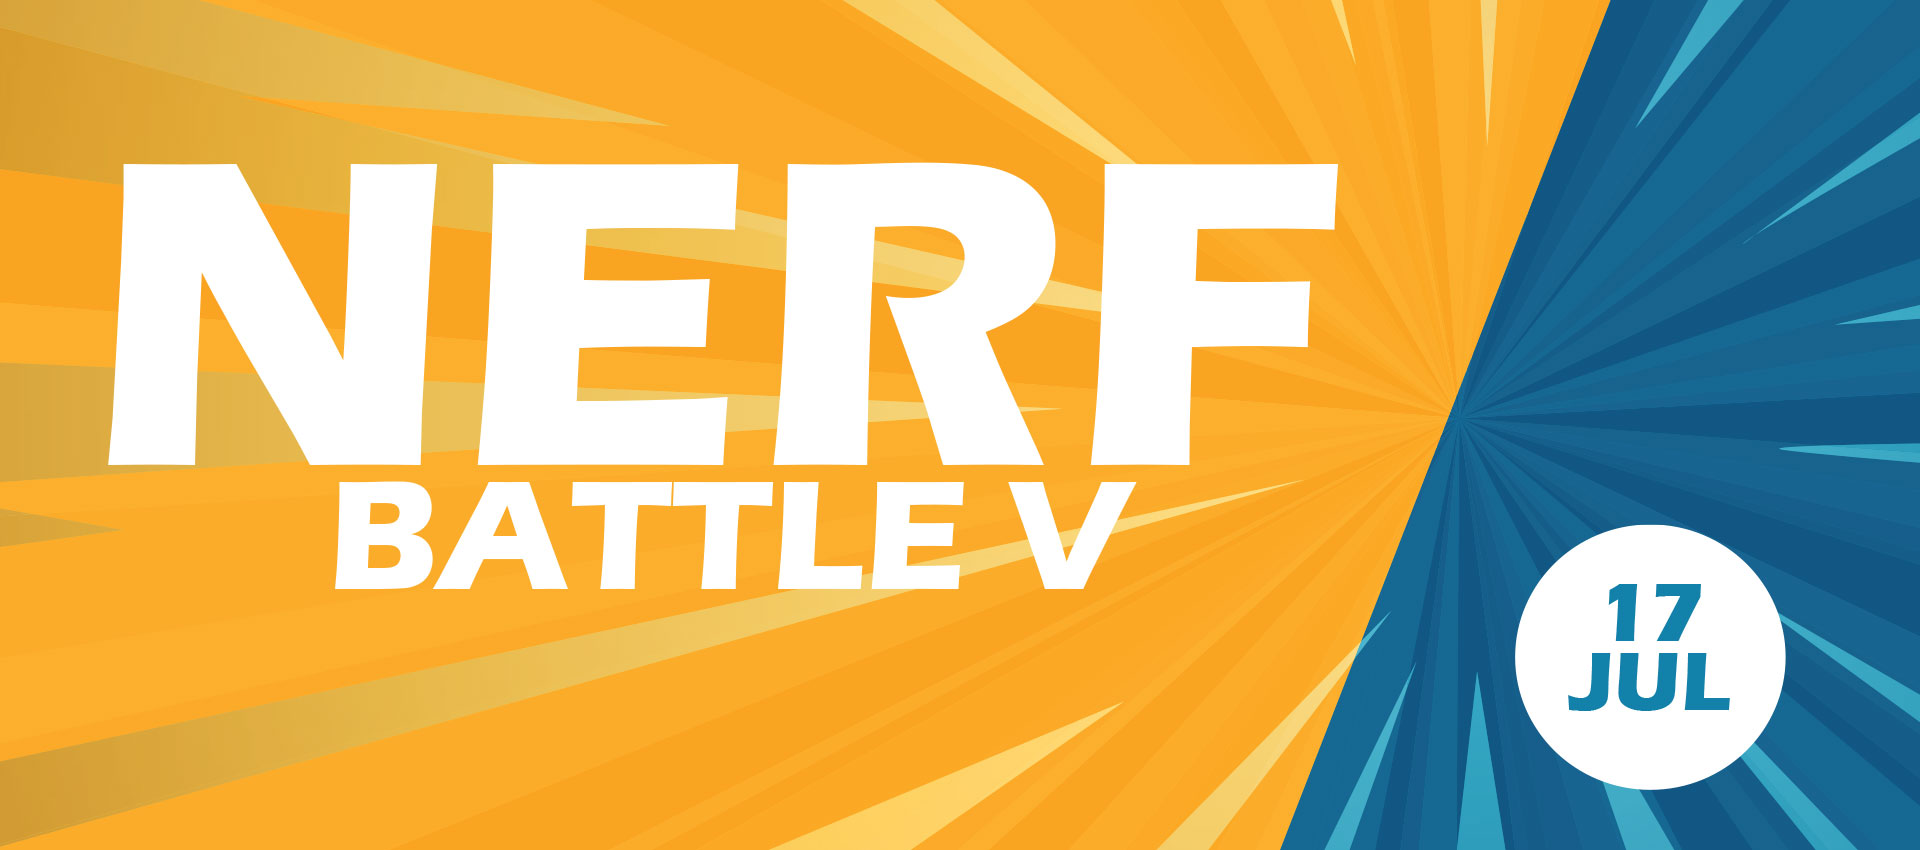 Nerf Battle V